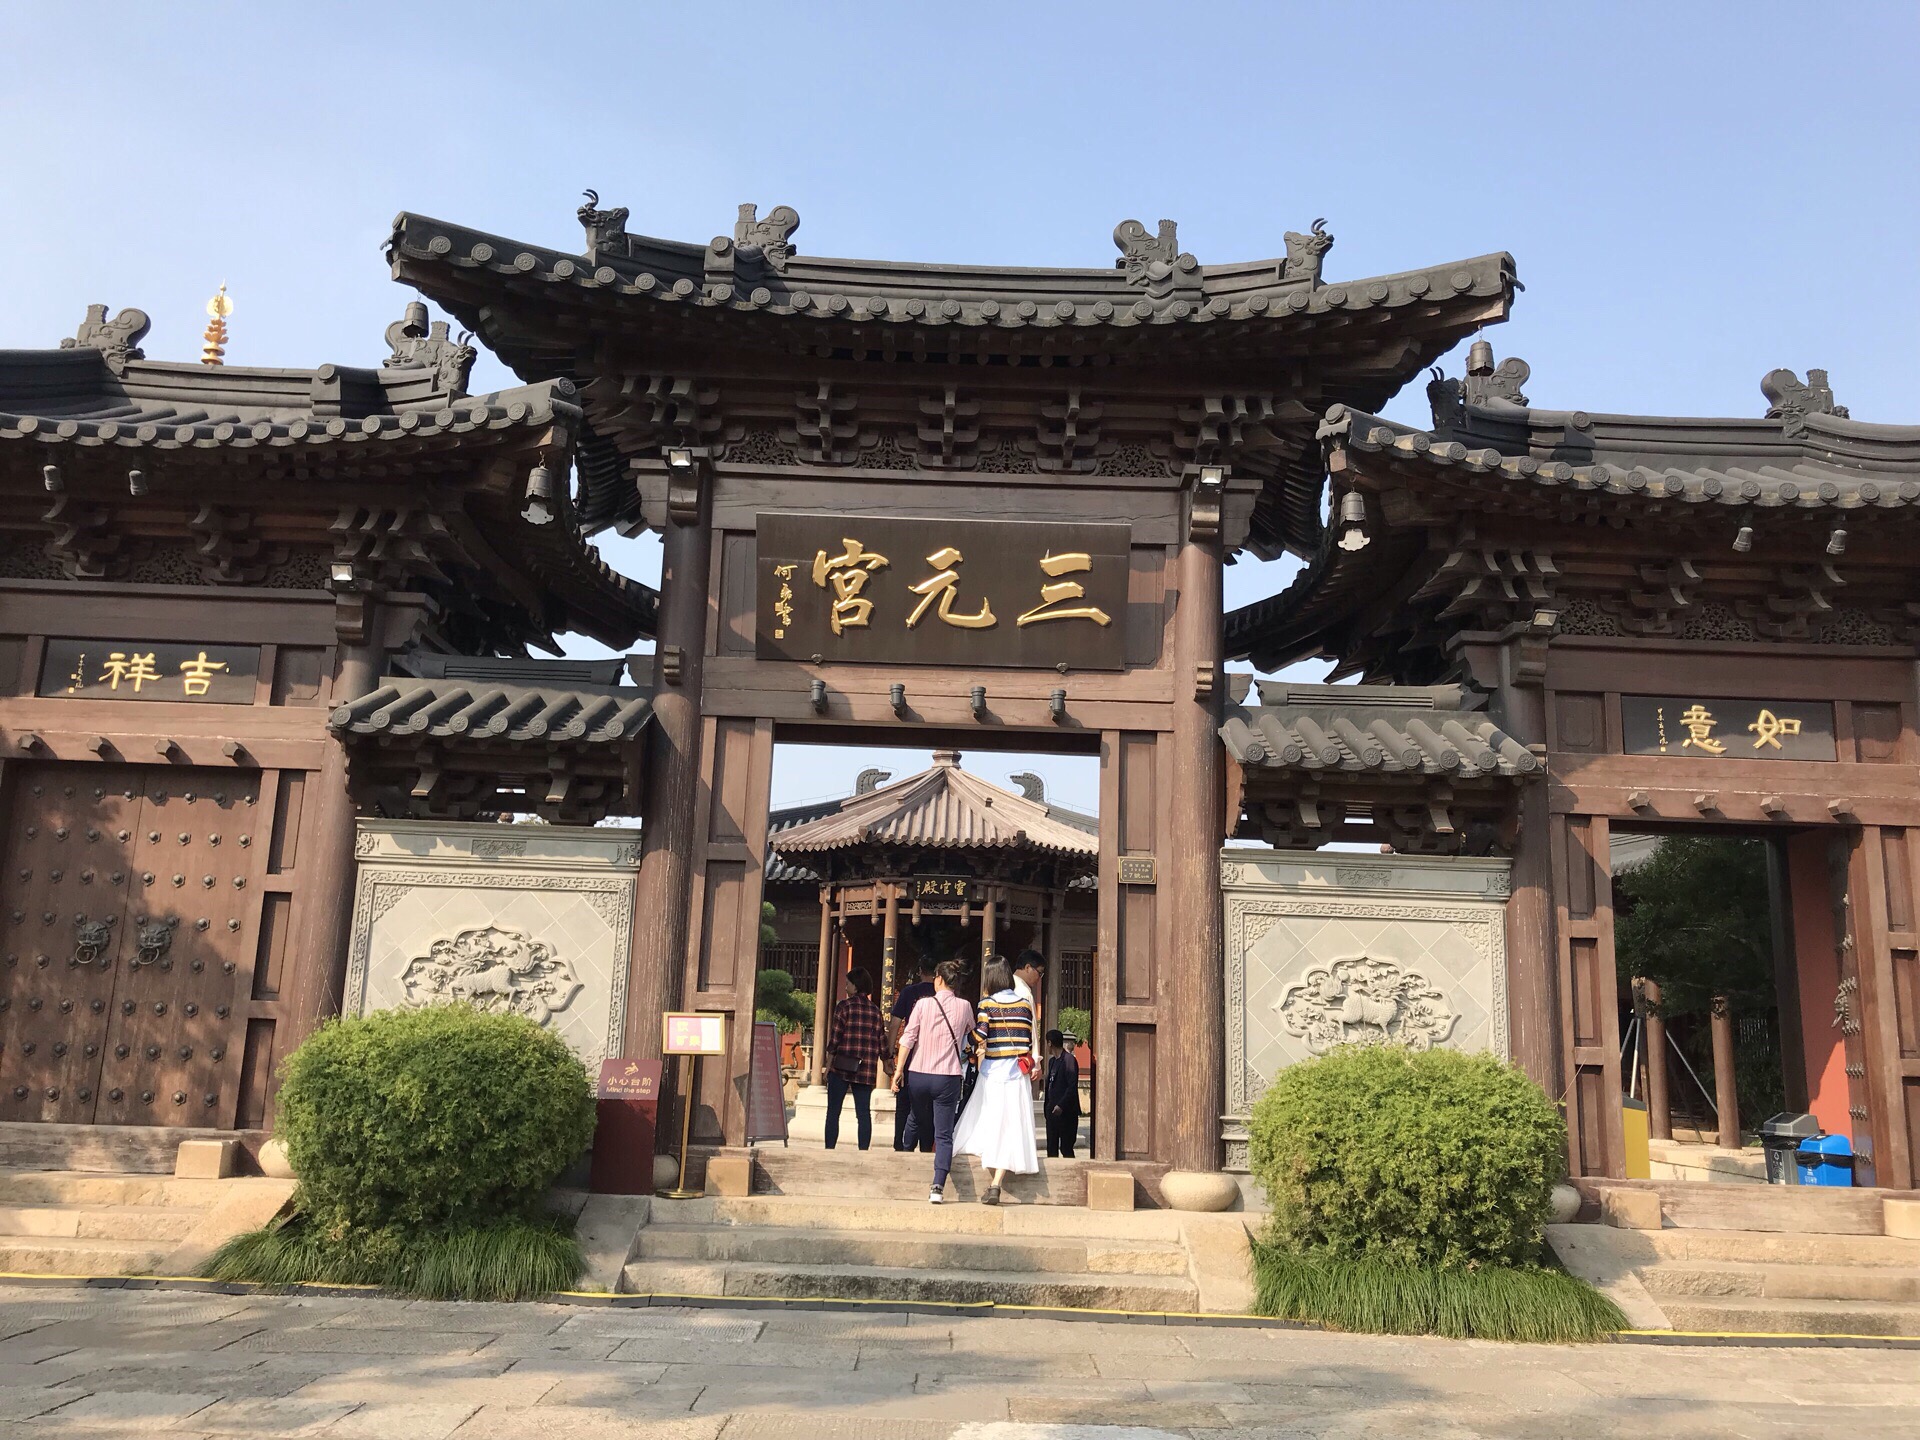 在广富林，道观的建筑比较多，三元宫就是一家道观。  广富林中的三元宫就是一家道观，三元宫是仿造宋代的